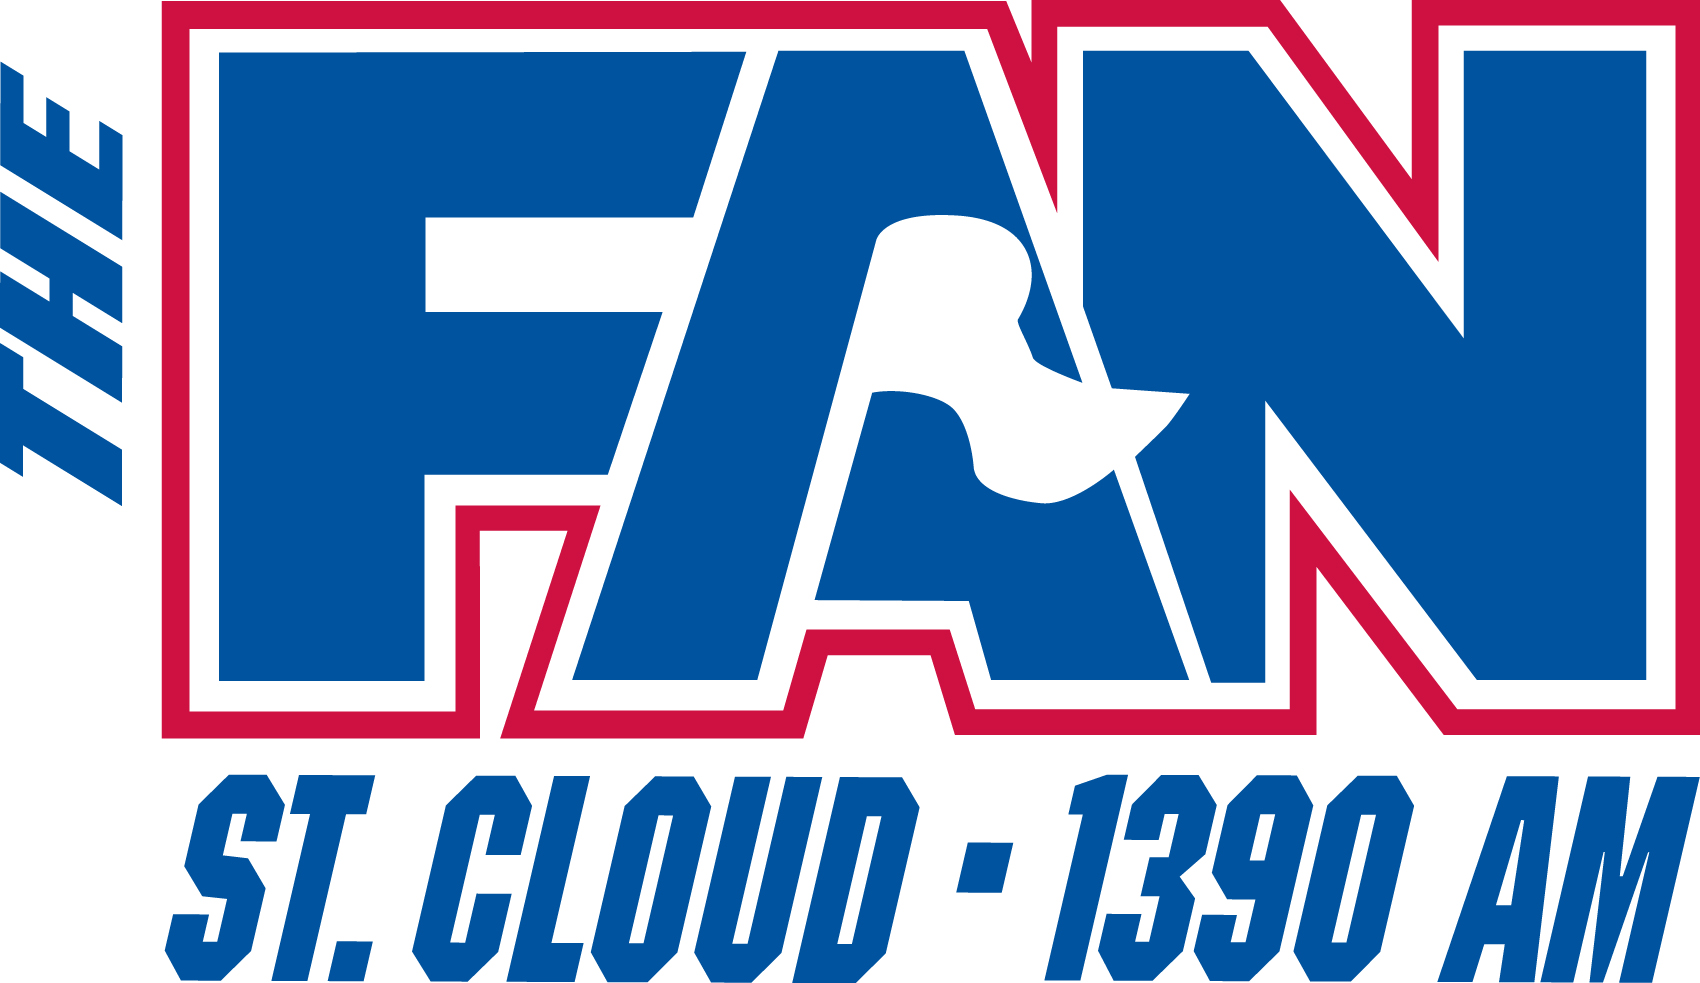 The Fan St. Cloud 1390 AM